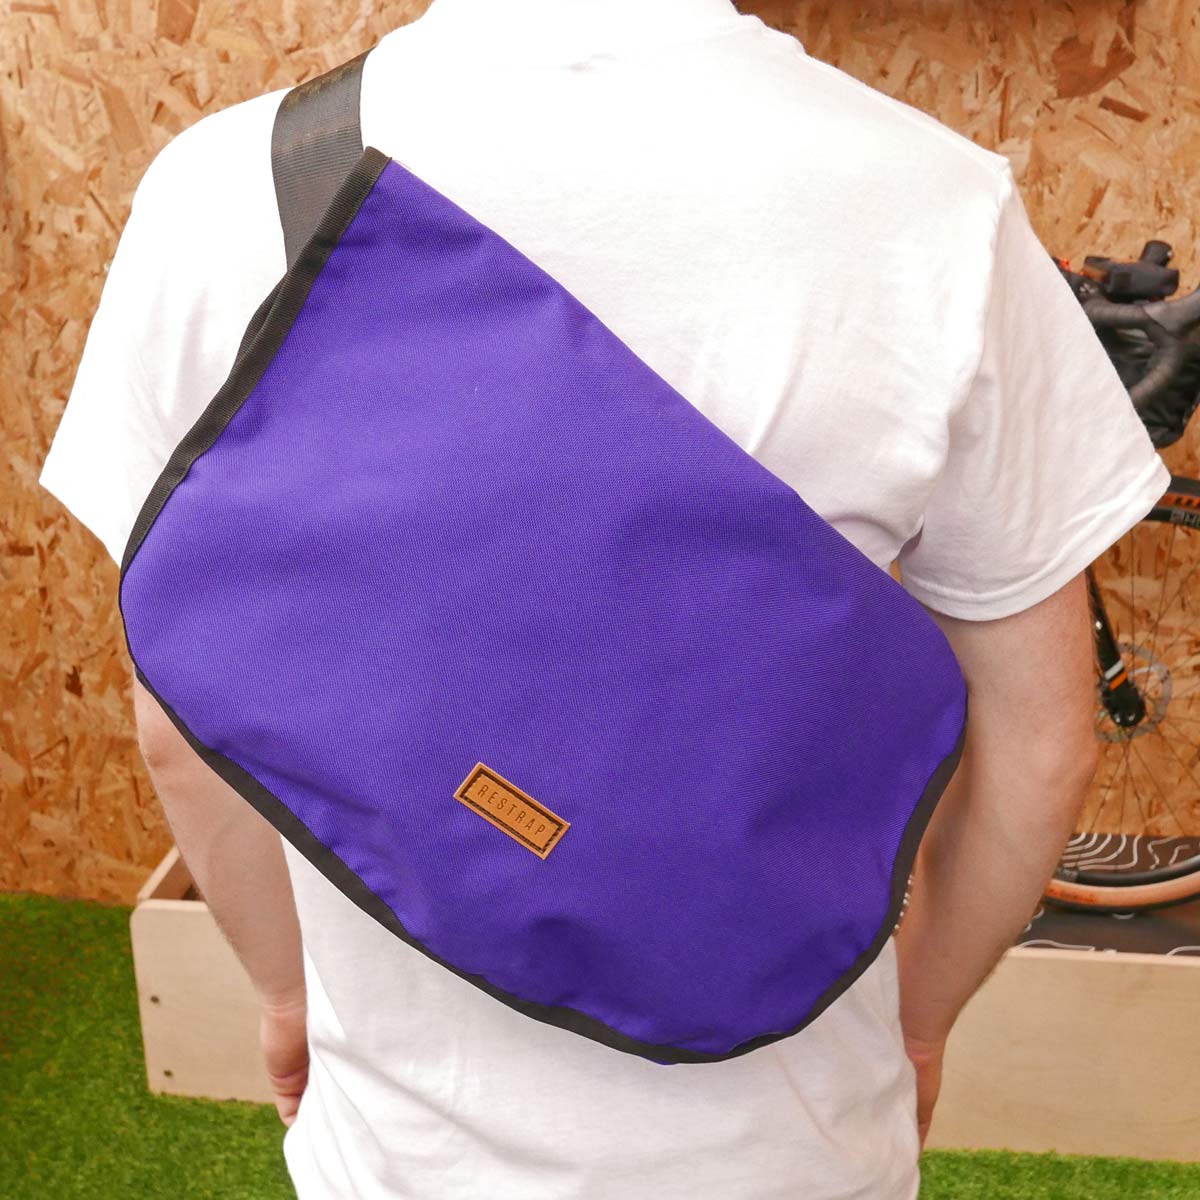 Restrap Messenger bag slim compact shoulder bag cycling backpack